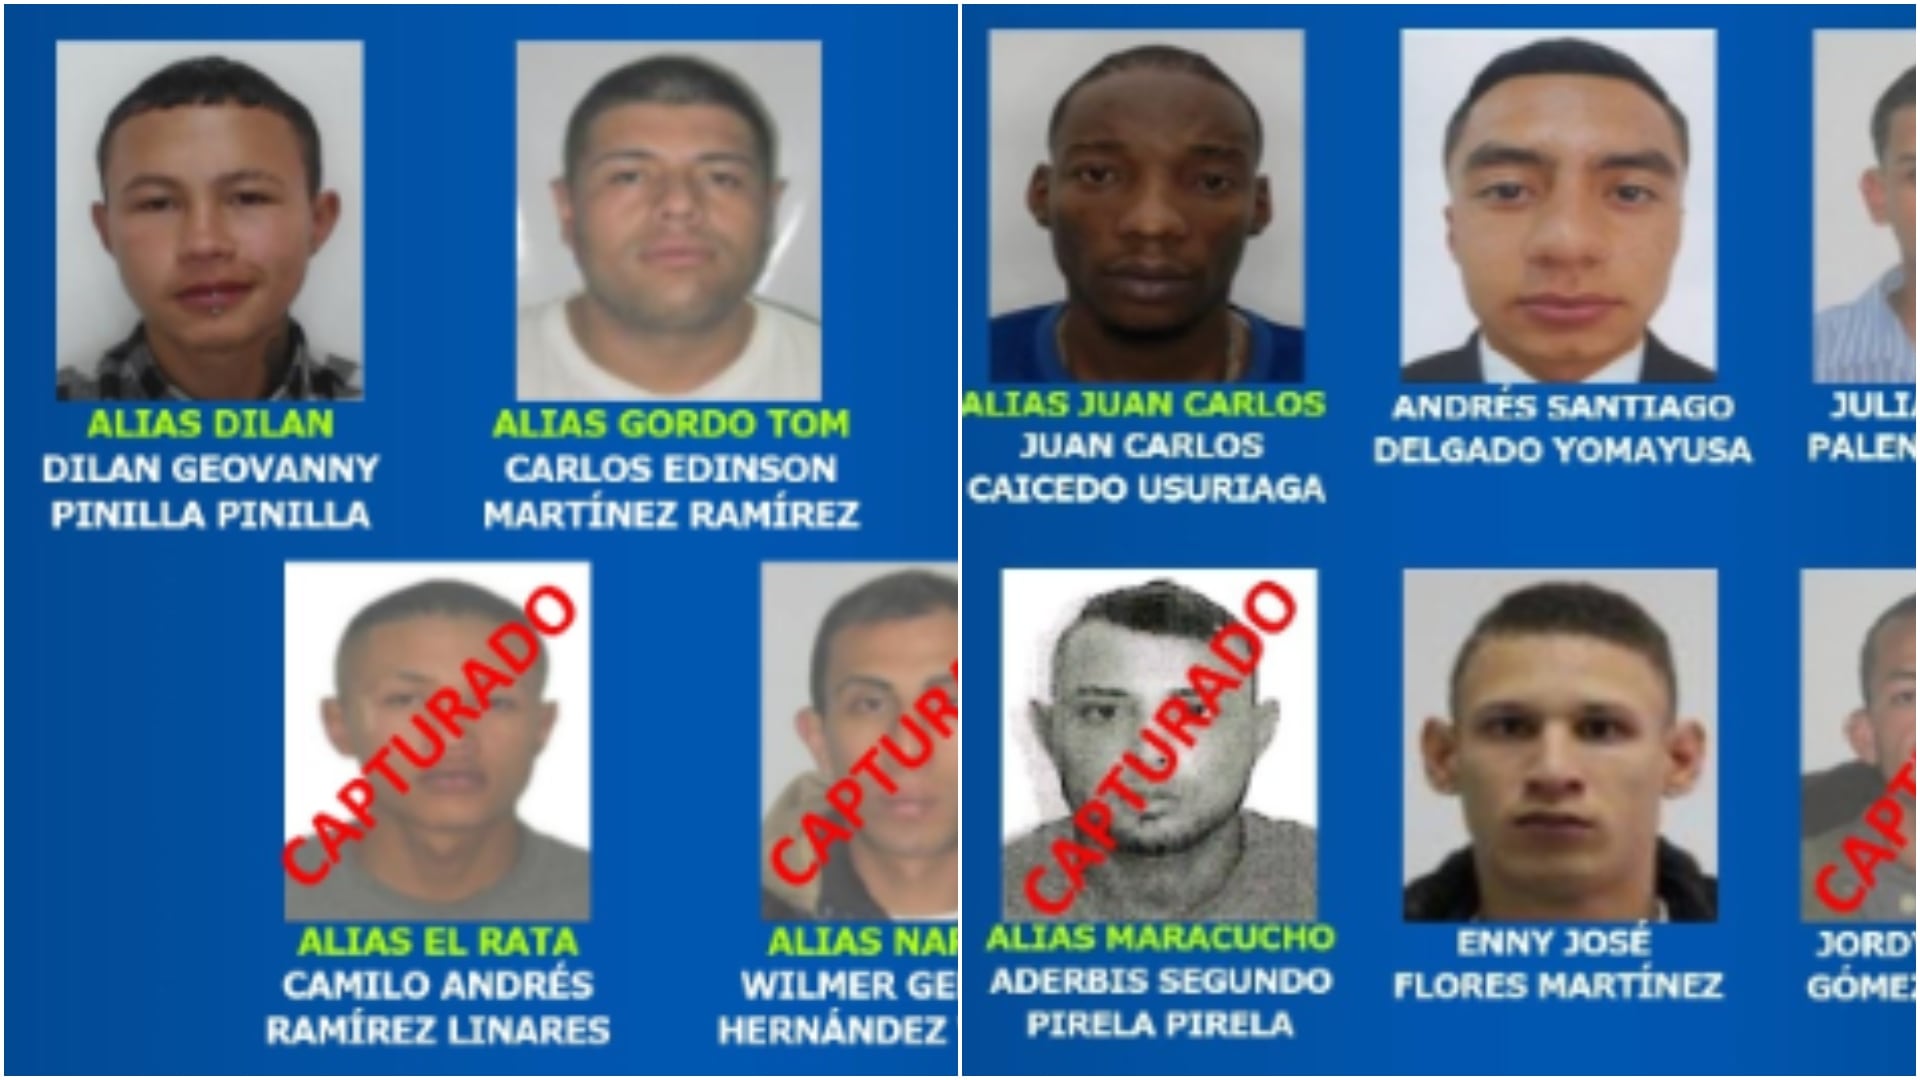 La Policía Nacional dio a conocer la lista de los delincuentes más buscados en Bogotá